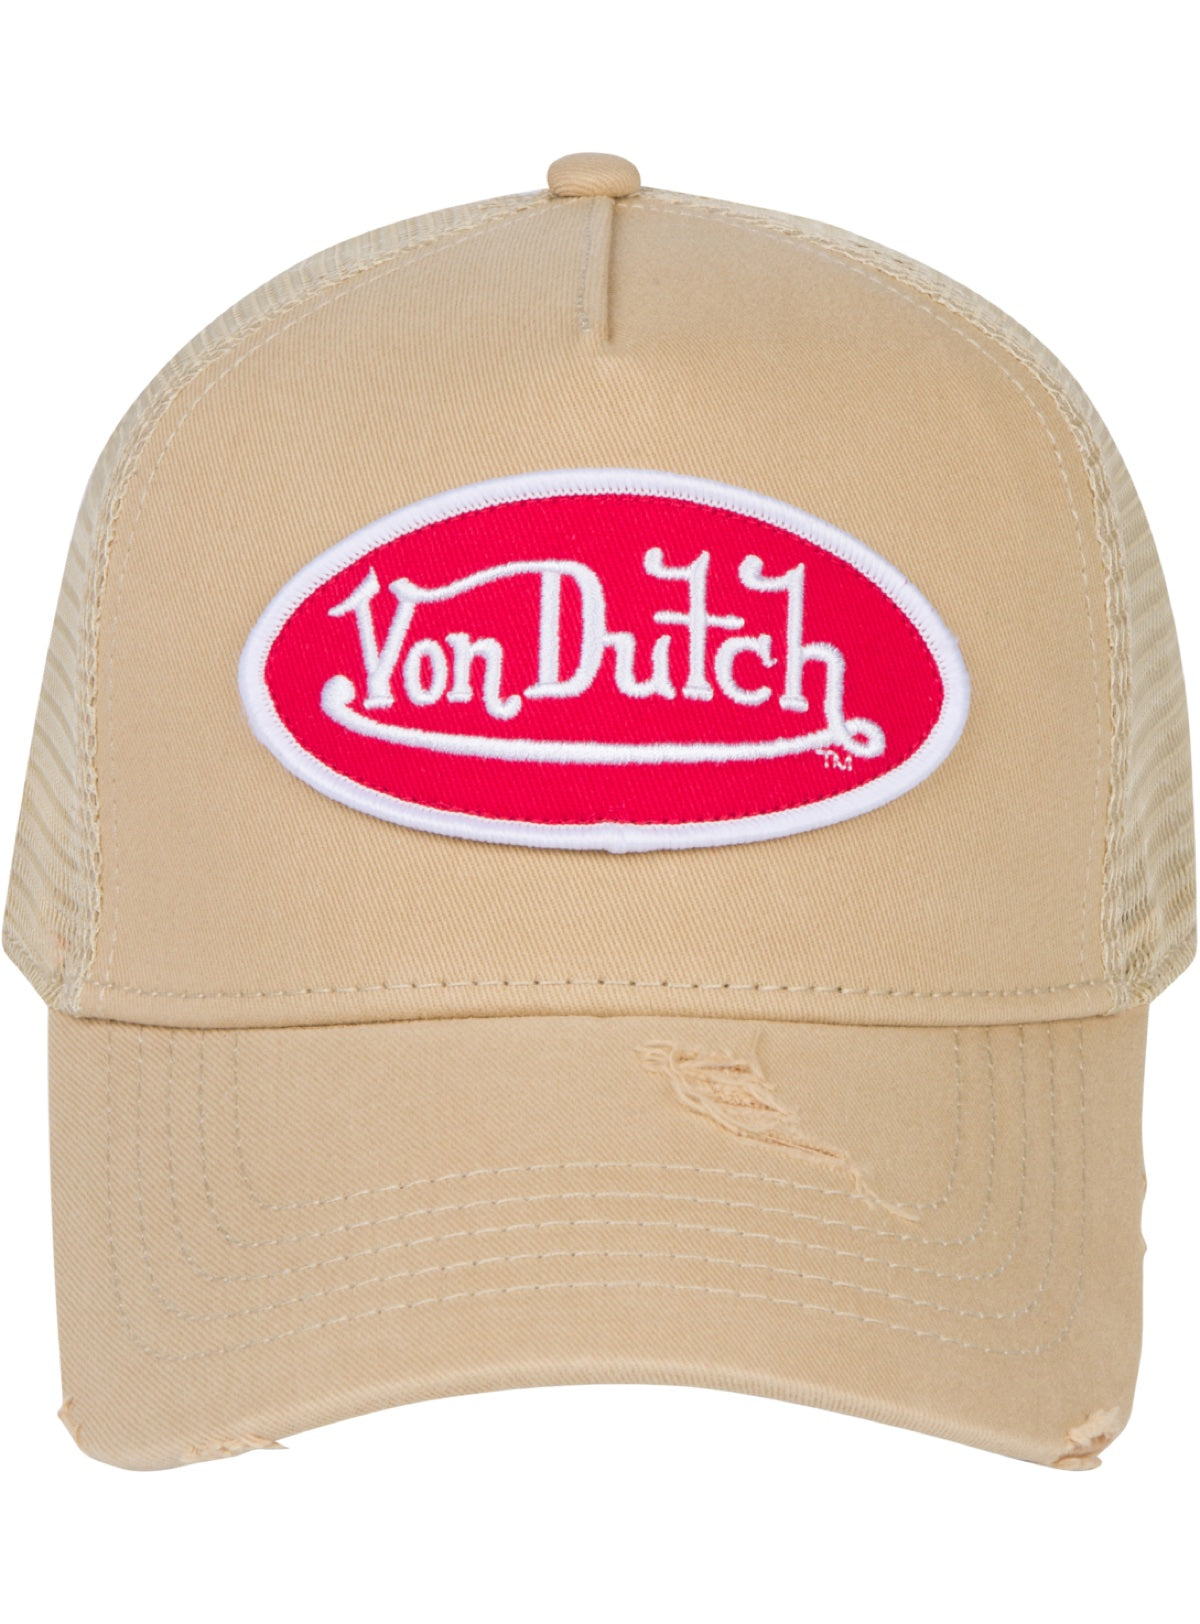 Von Dutch Hats & Tees – Vengeance78